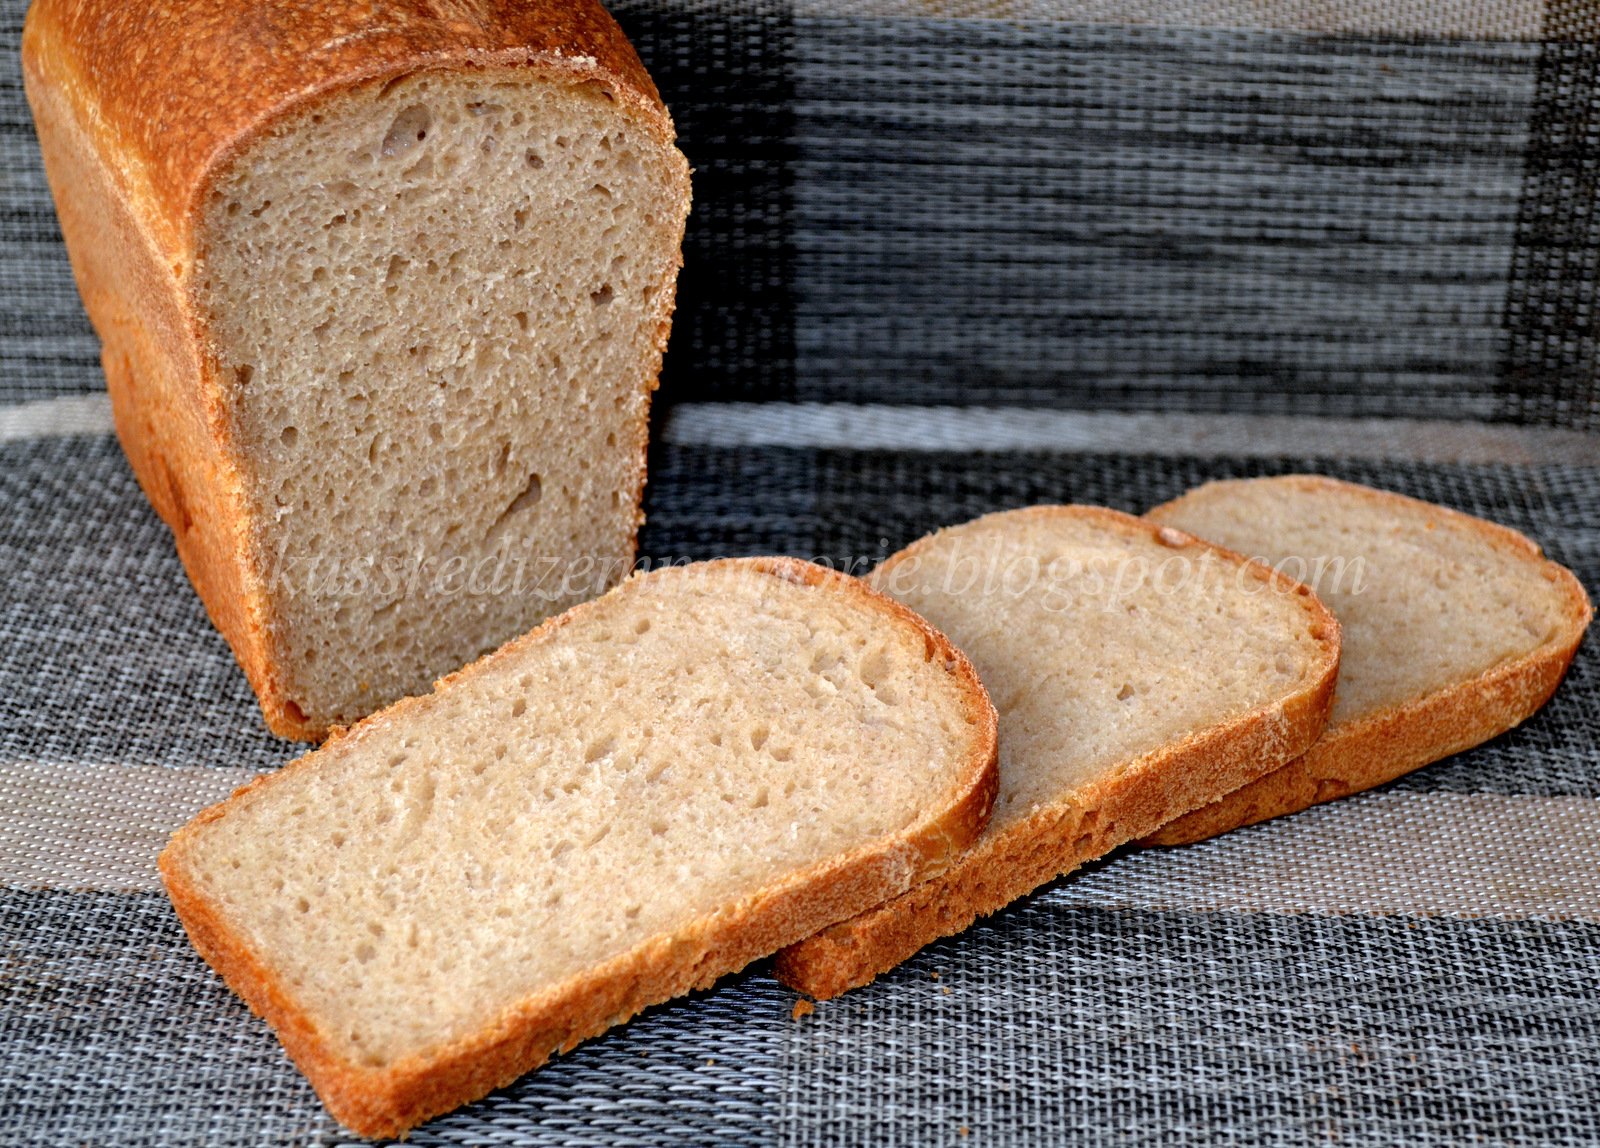 Пшеничный хлеб в форме. Пшеничный хлеб пшеничный хлеб. Формовой пшеничный хлеб на закваске. Ржано-пшеничный хлеб ржано-пшеничный хлеб. Белый формовой хлеб на закваске.